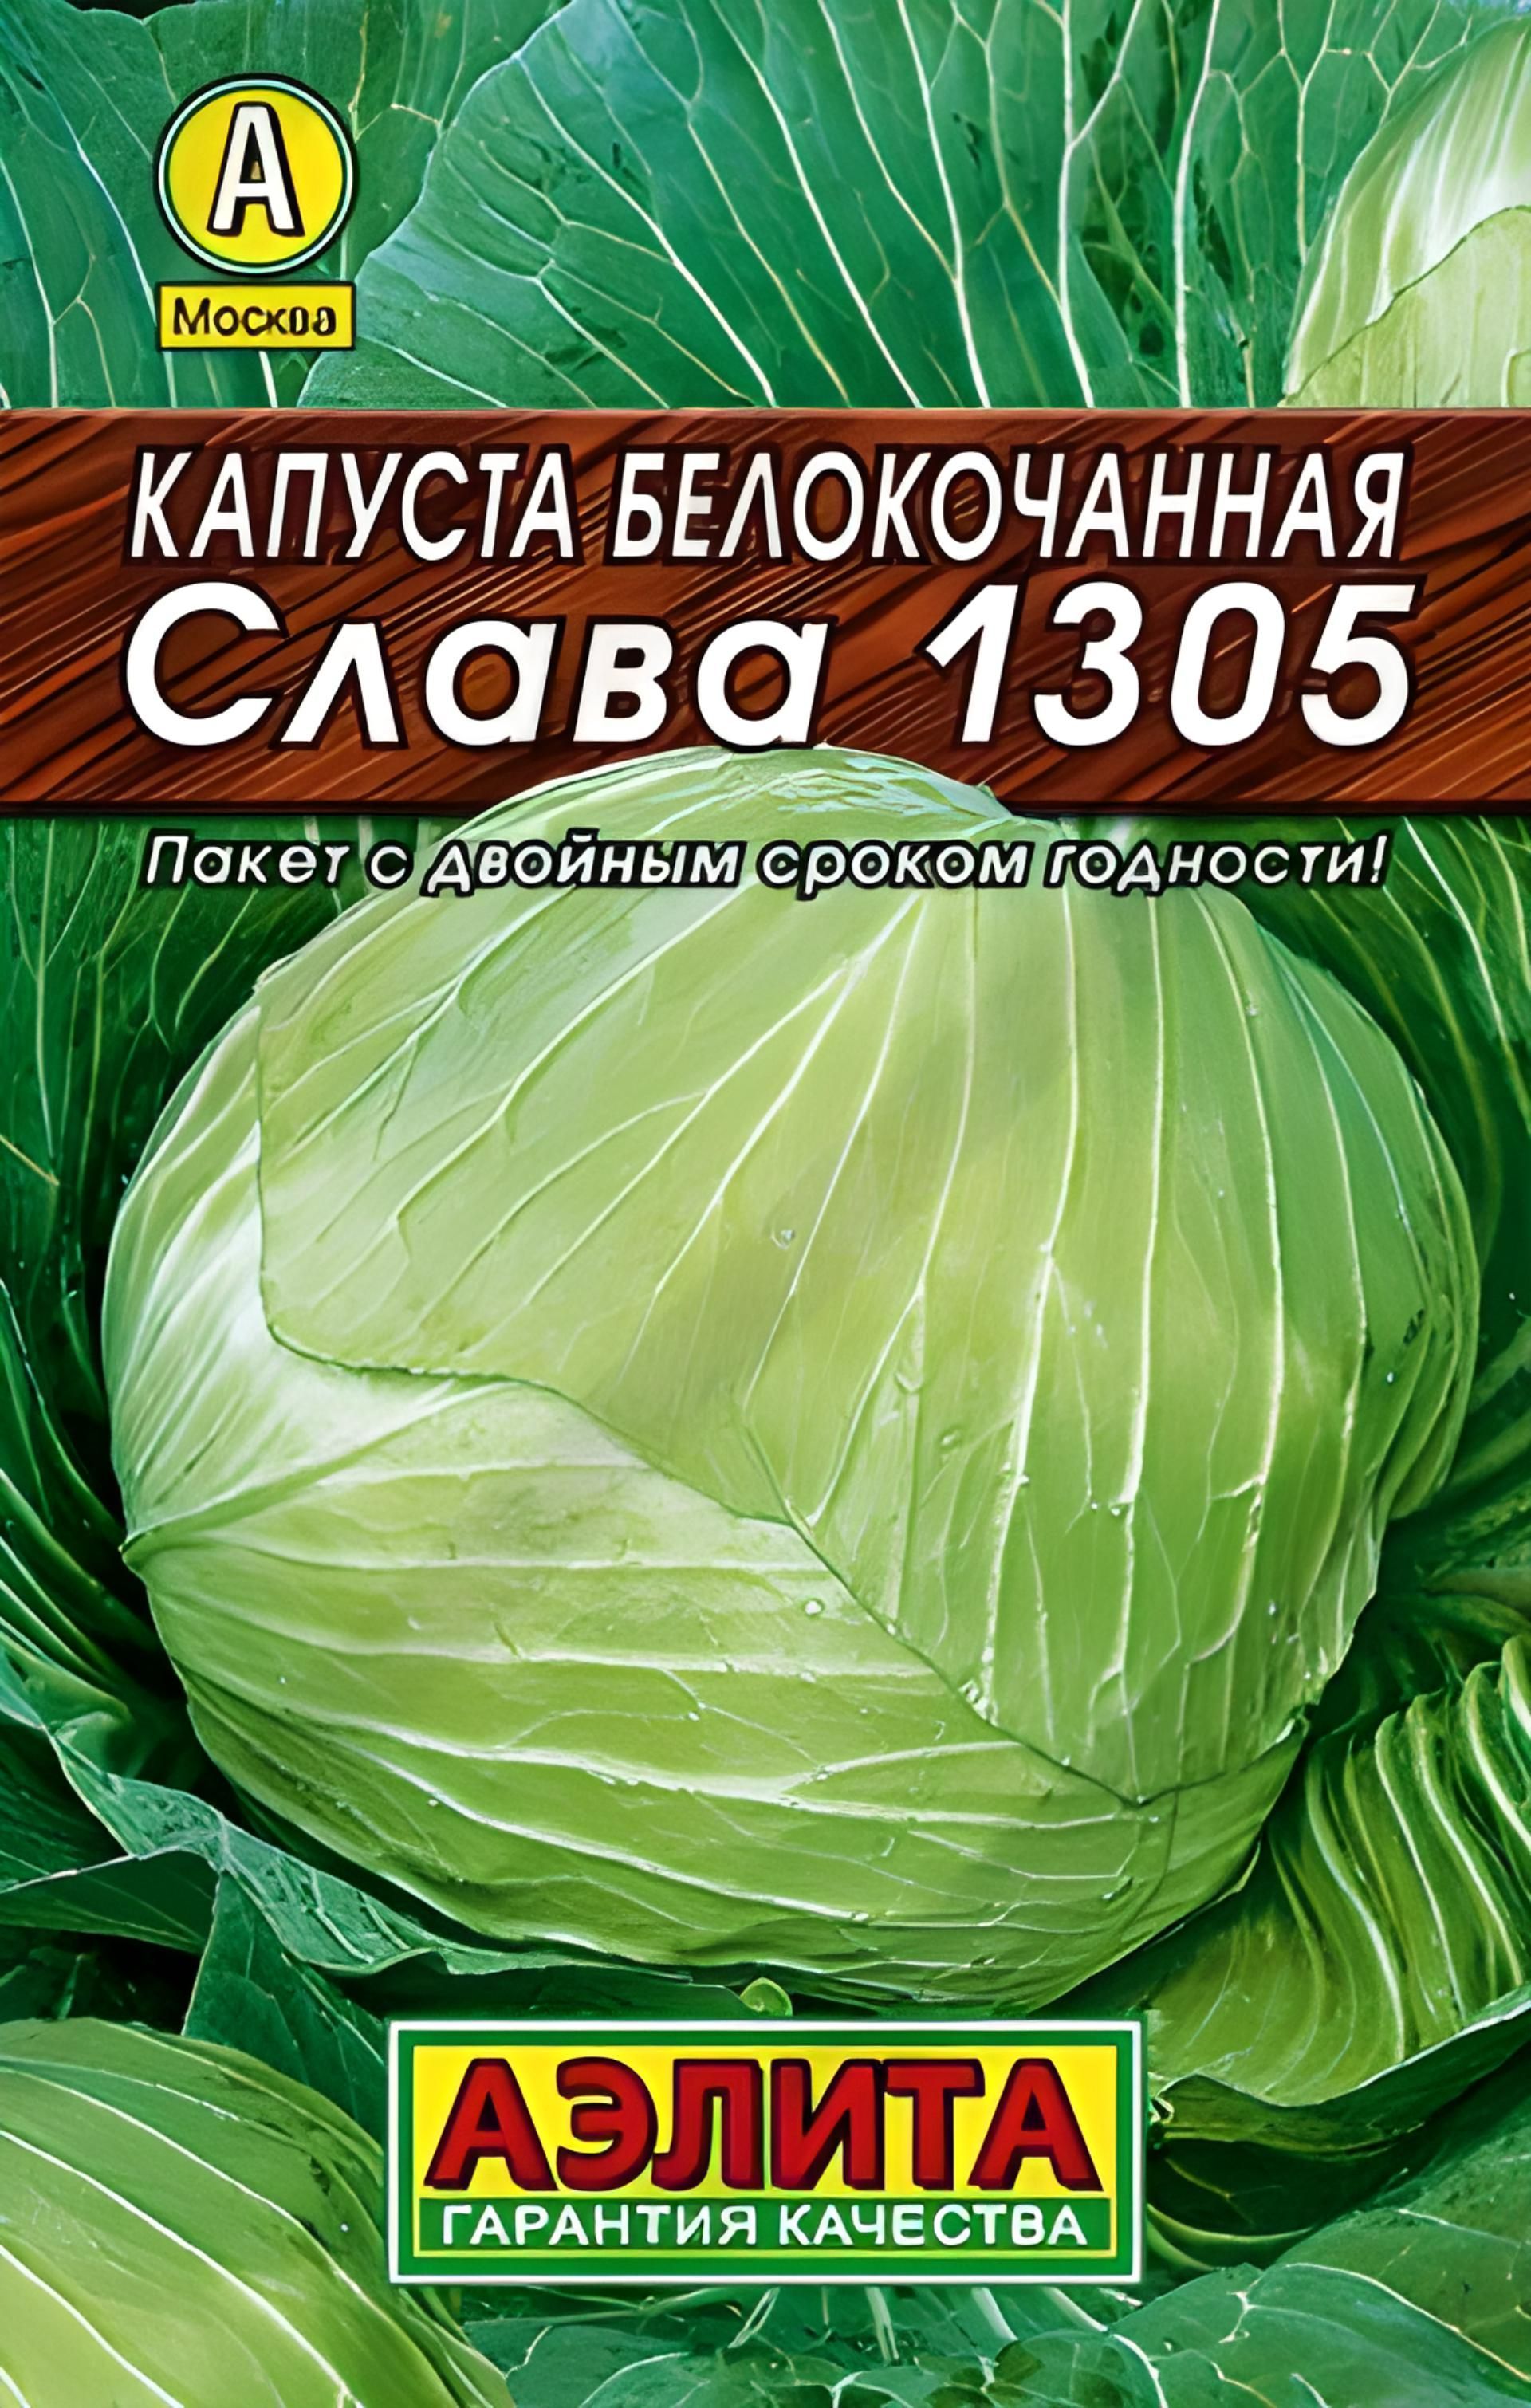 Капуста слава характеристика и описание. Семена капуста белокочанная Слава 1305 (Семетра) 0,5гр. Капуста Слава 1305 семена.